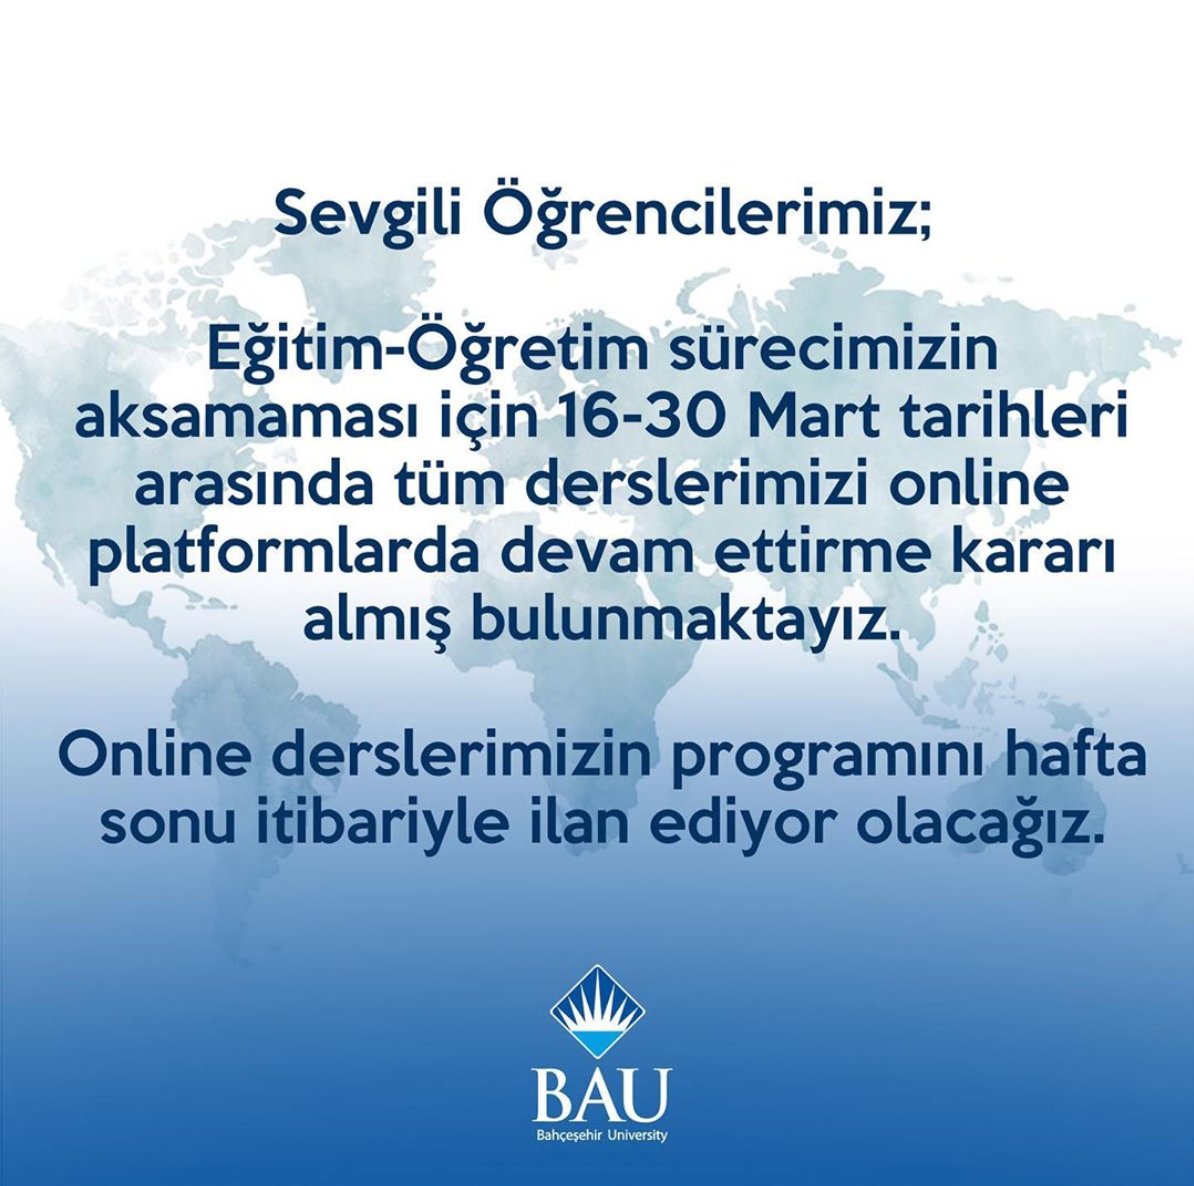 #BahçeşehirÜniversitesi: Tüm dersler 16-30 Mart tarihleri arasında online olarak verilecektir.